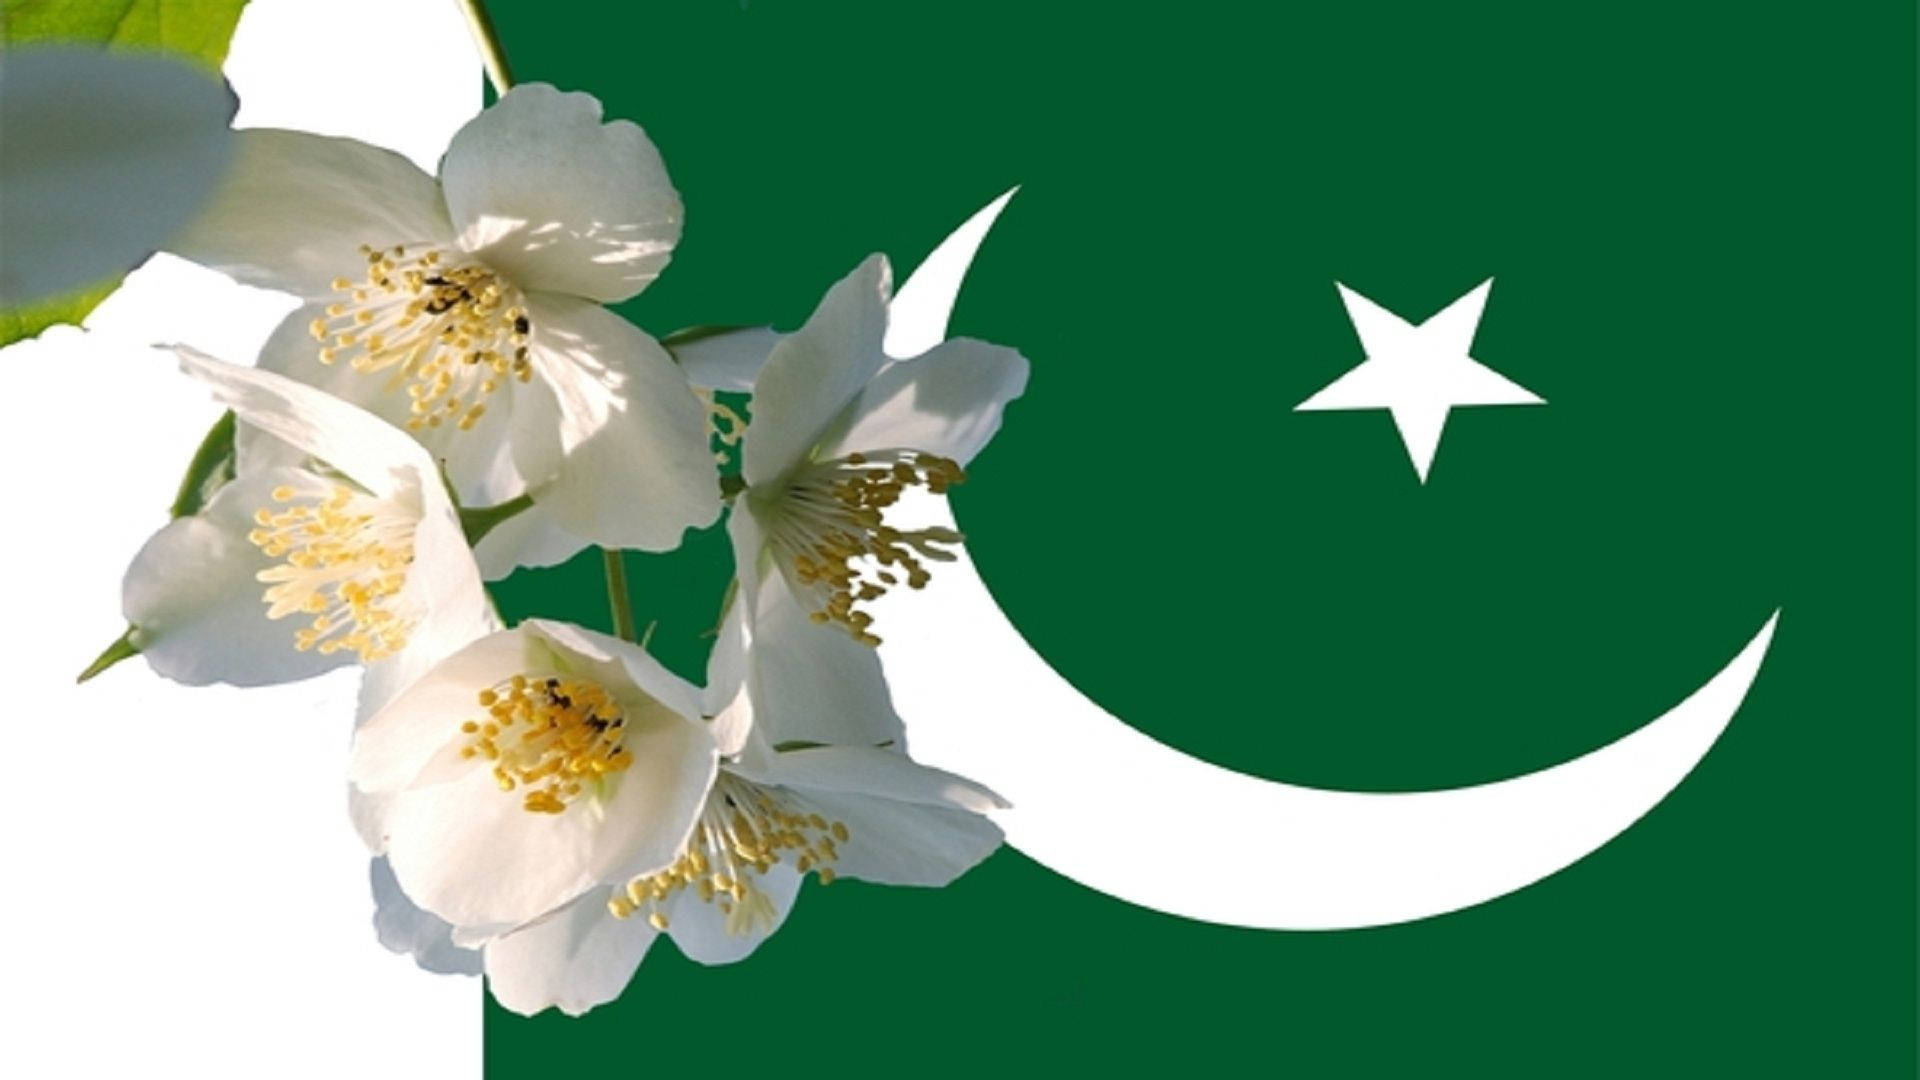 Caption: Vibrant Floral Emblem Of Pakistan Background